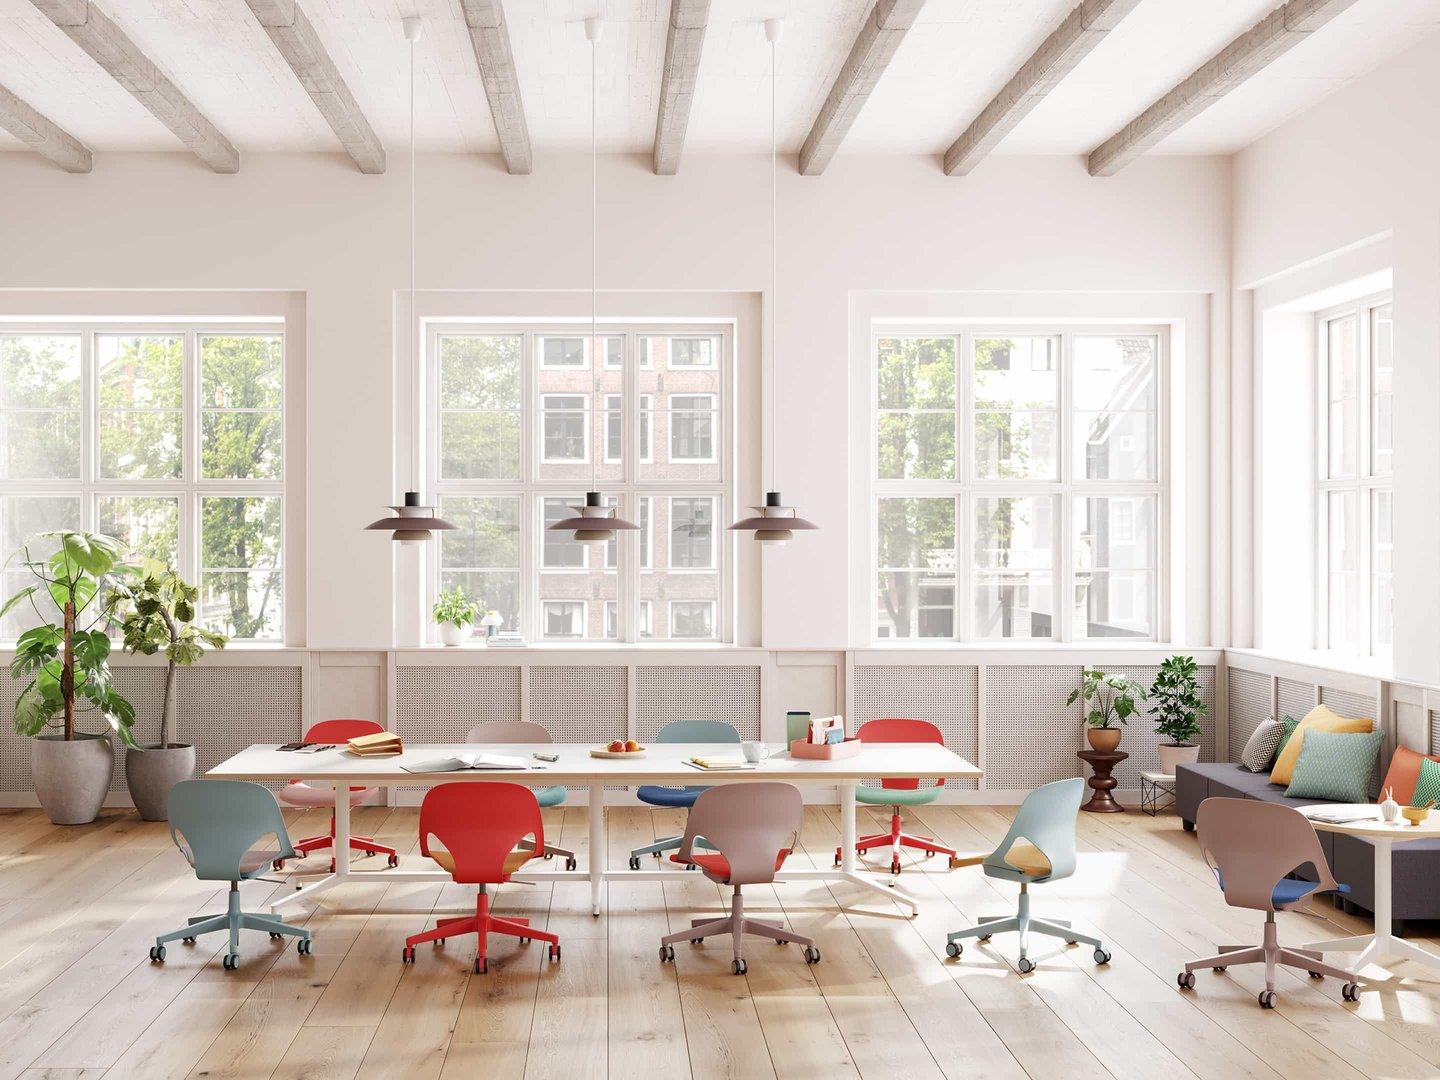 Büromöbel: Mehr Farbe für den Arbeitsalltag